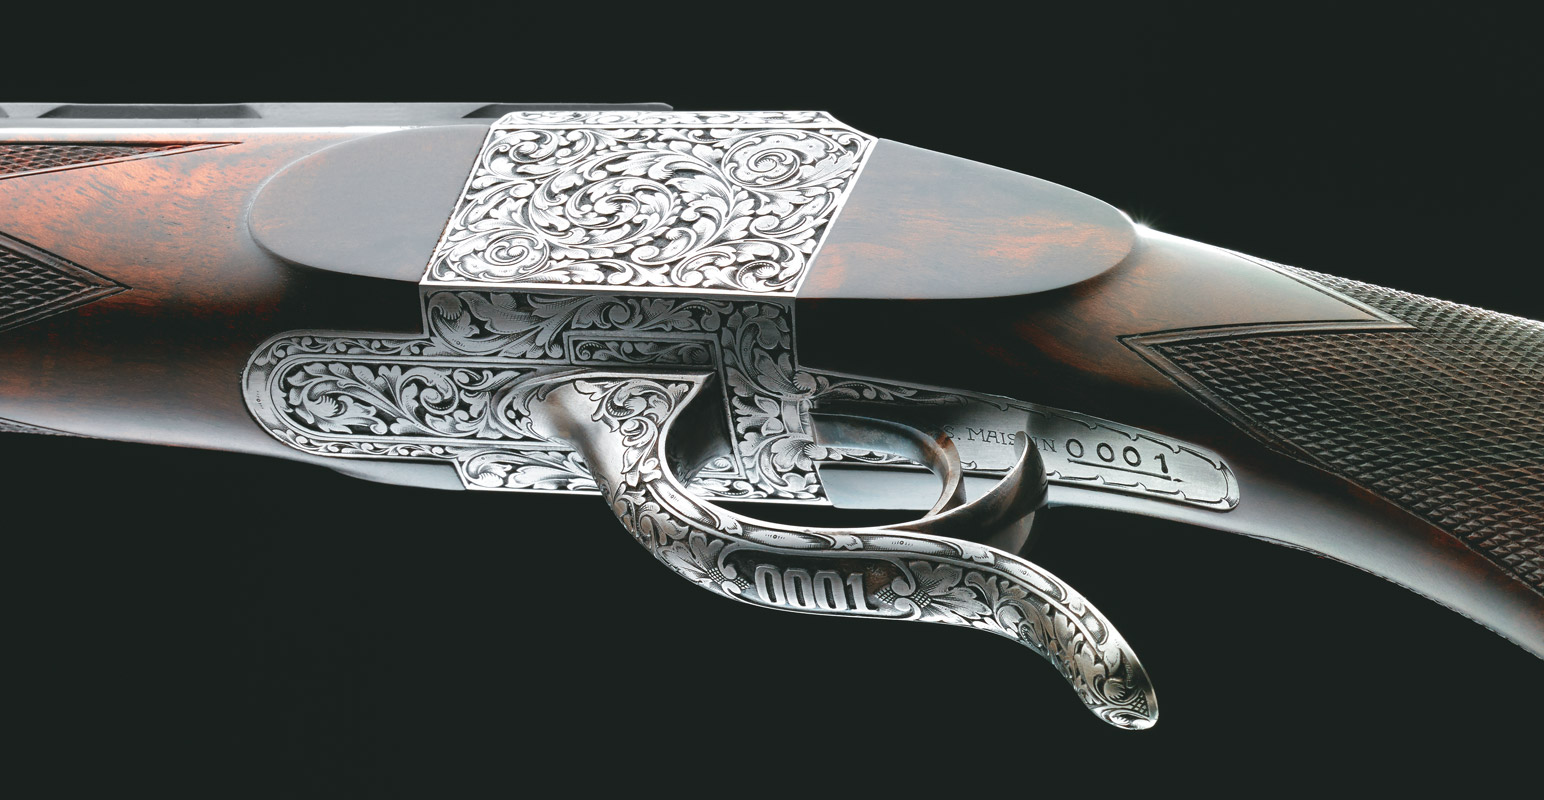 Fusil de collection Verney-Carron avec gravures